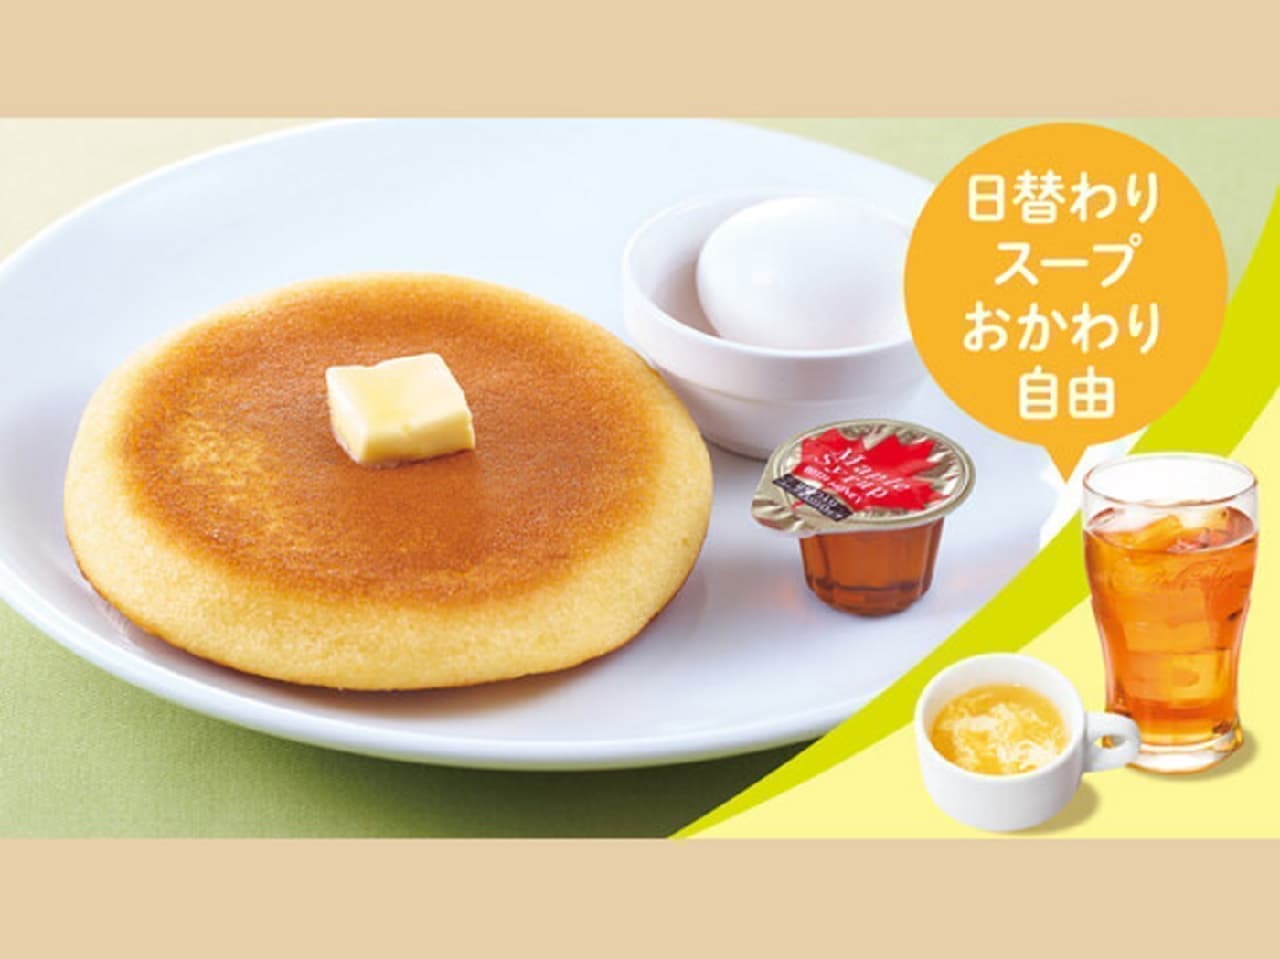 Gusto "Pancake & Hard-boiled Egg Set